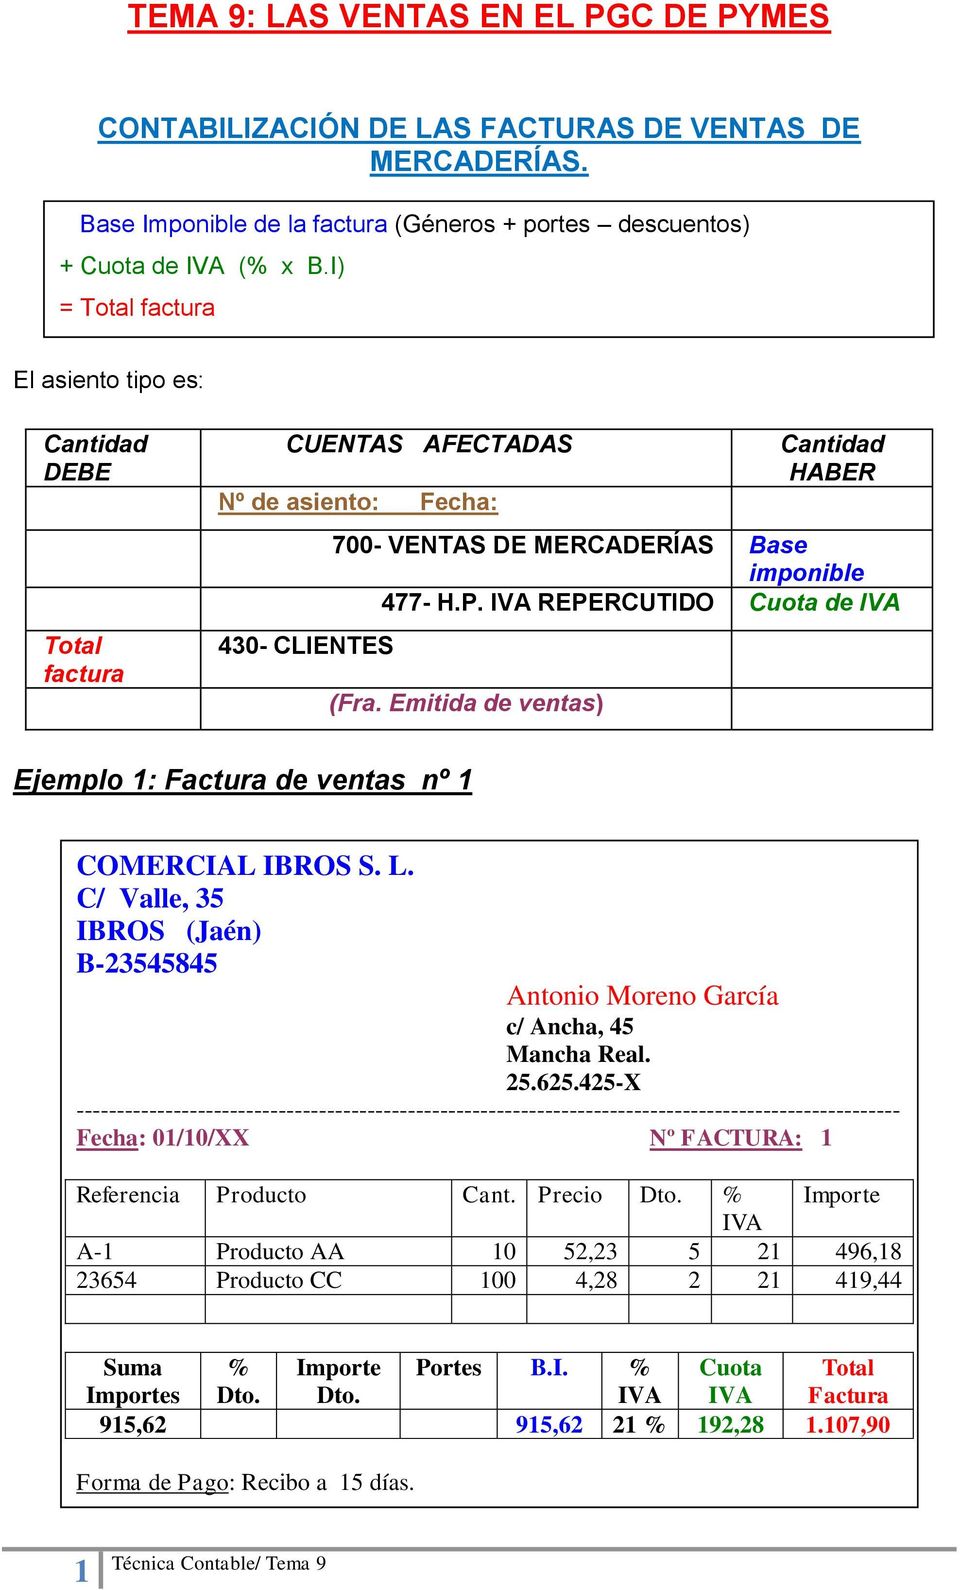 Emitida de ventas) Ejemplo 1: Factura de ventas nº 1 COMERCIAL IBROS S. L. C/ Valle, 35 IBROS (Jaén) B-23545845 Antonio Moreno García c/ Ancha, 45 Mancha Real. 25.625.